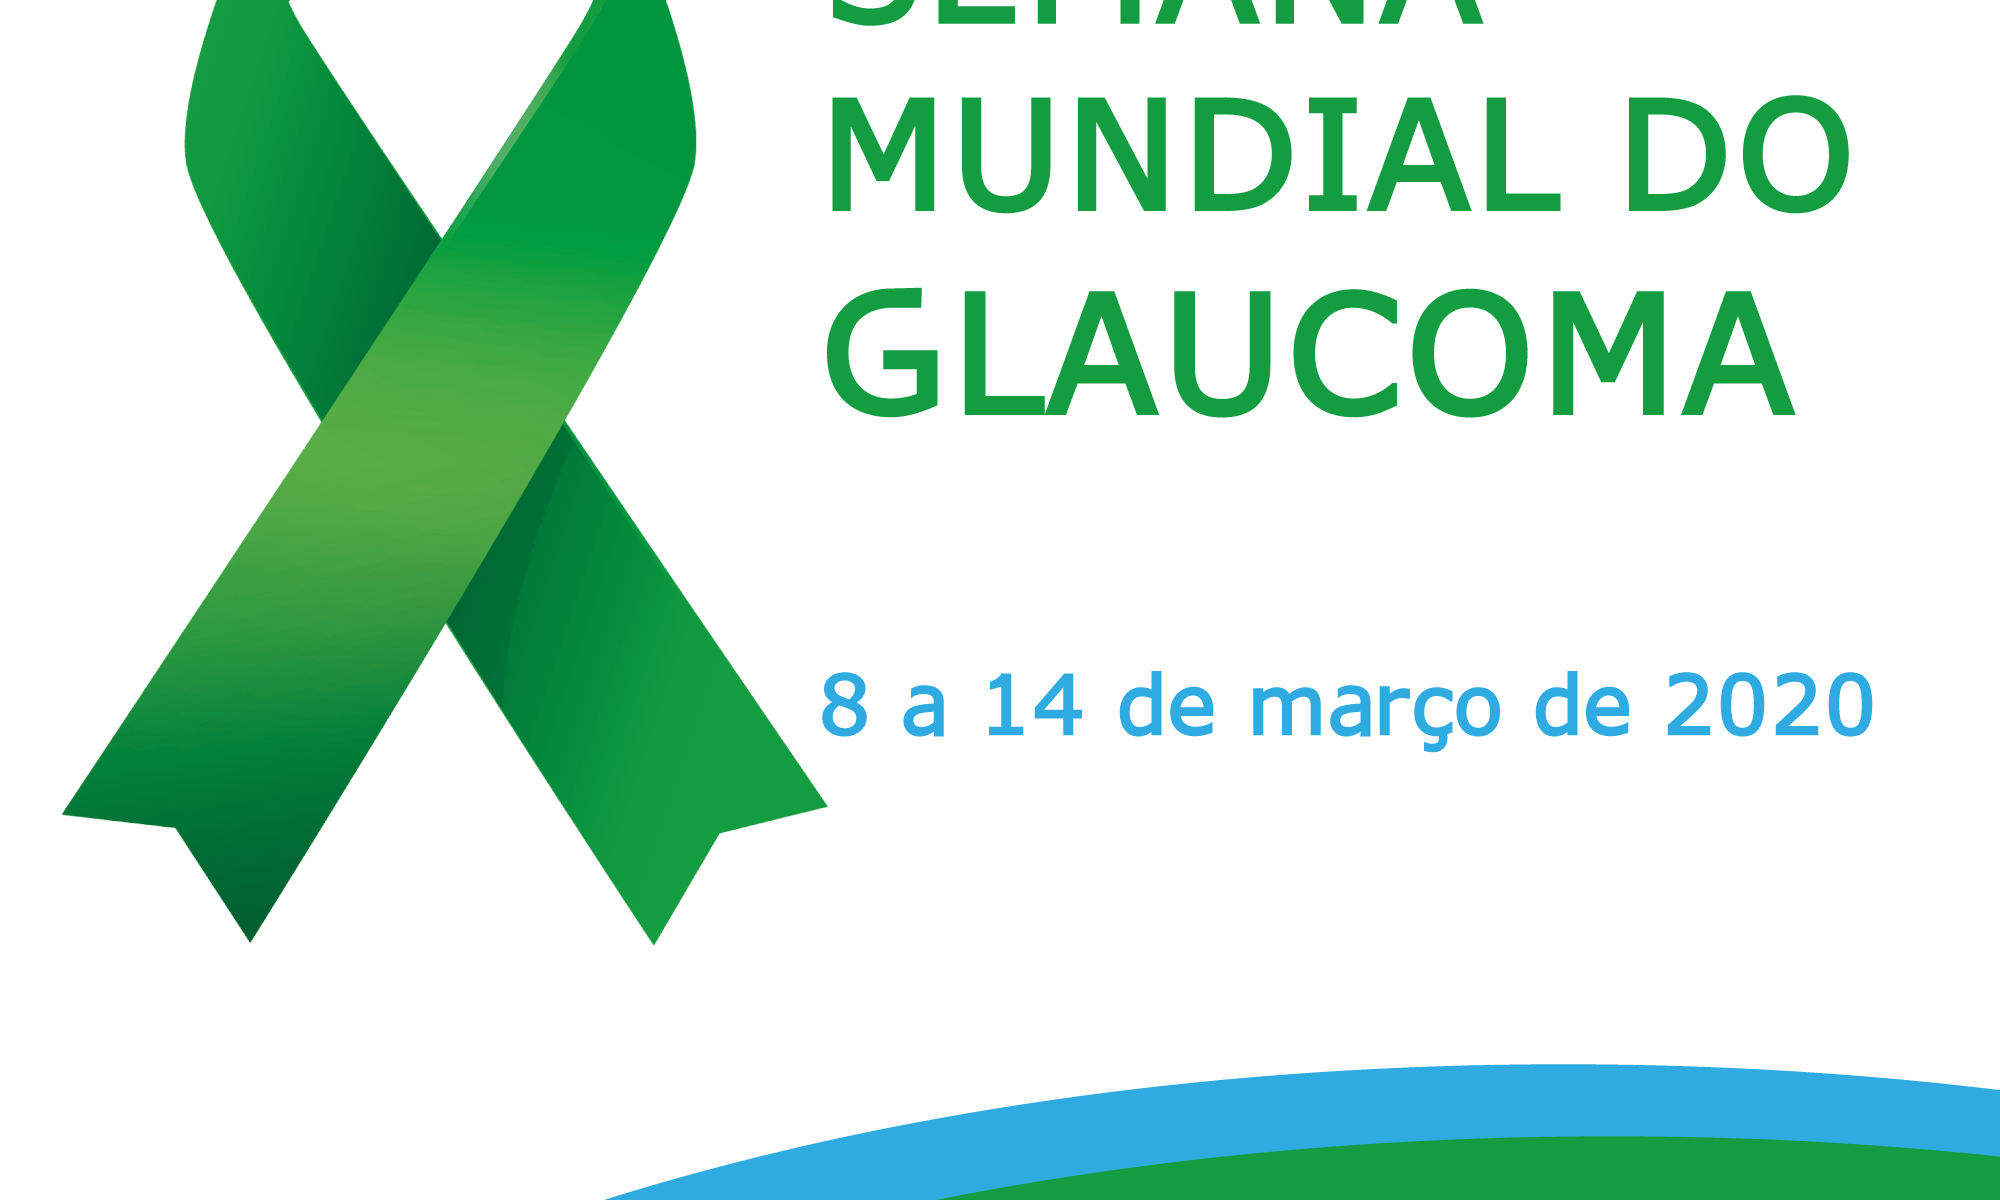 #PraCegoVer imagem de divulgação está escrito: "Semana Mundial do Glauoma 8 a 14 de março de 2020" #glaucomaweek